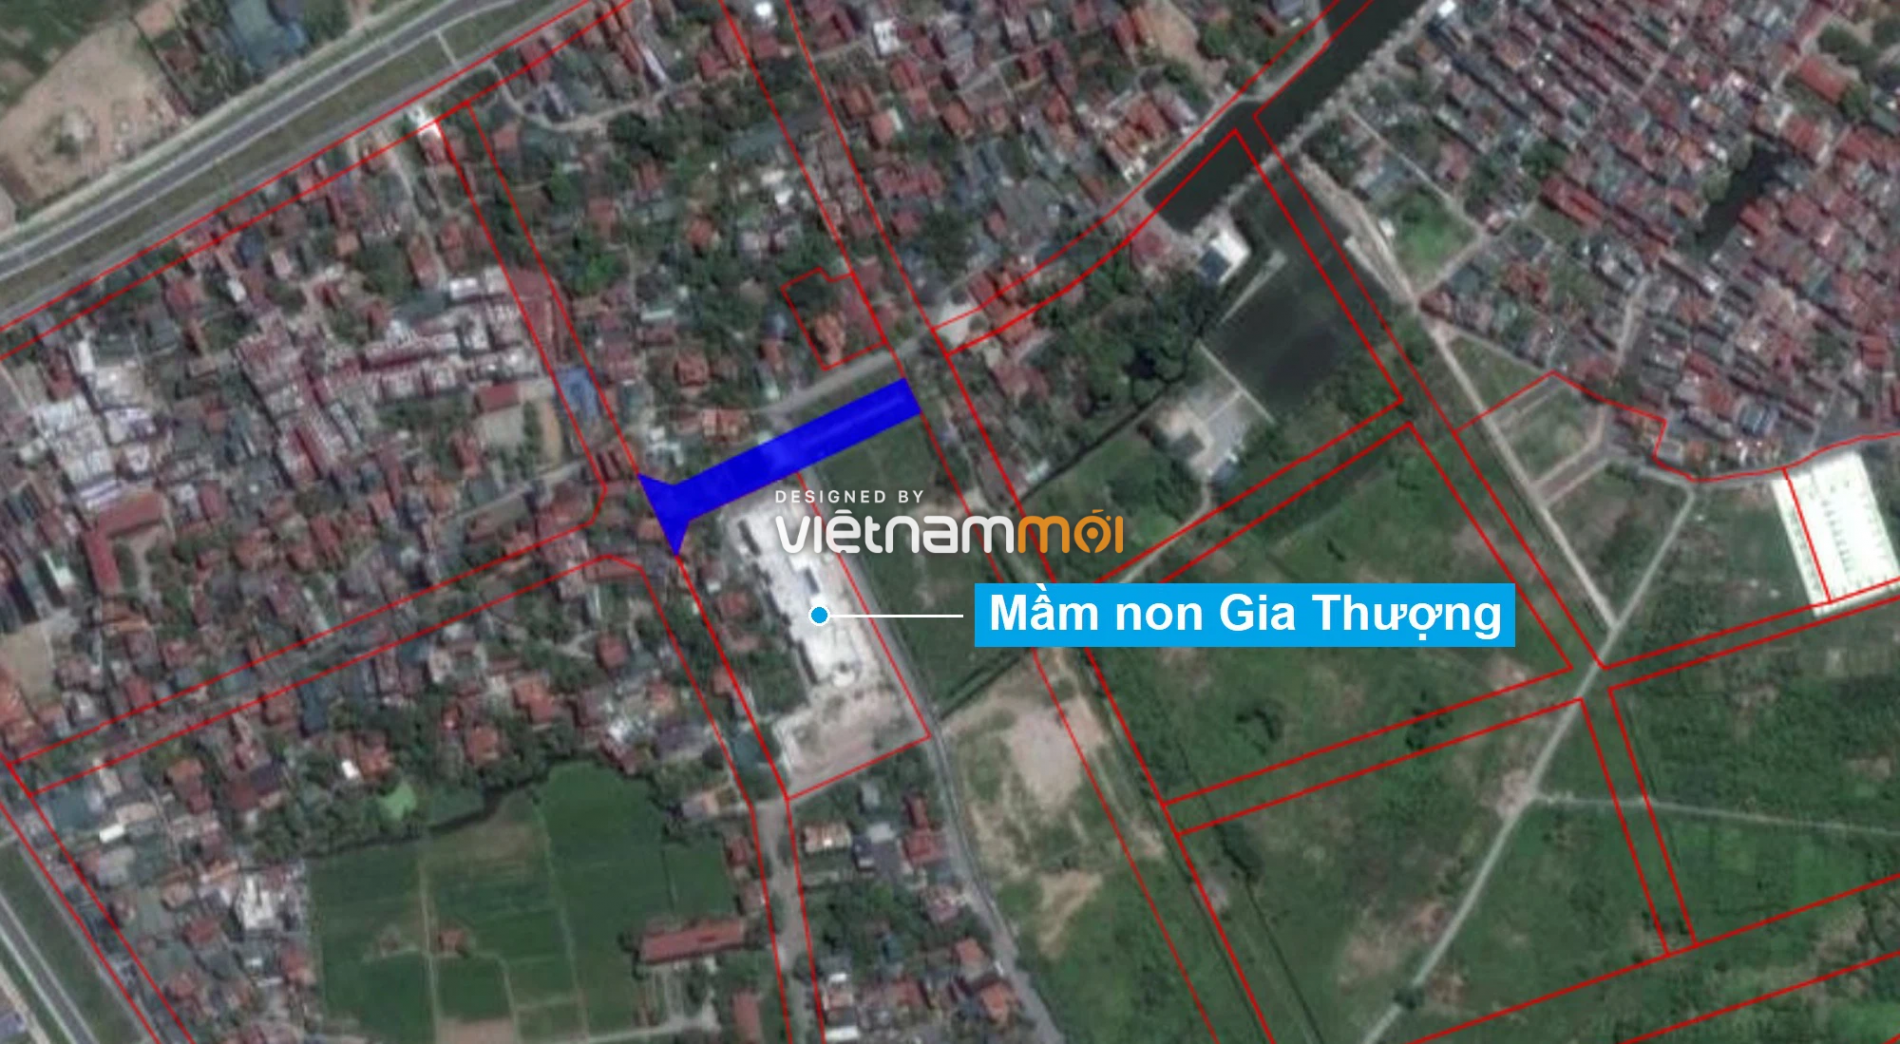 Những khu đất sắp thu hồi để mở đường ở phường Ngọc Thụy, Long Biên, Hà Nội (phần 2) - Ảnh 14.